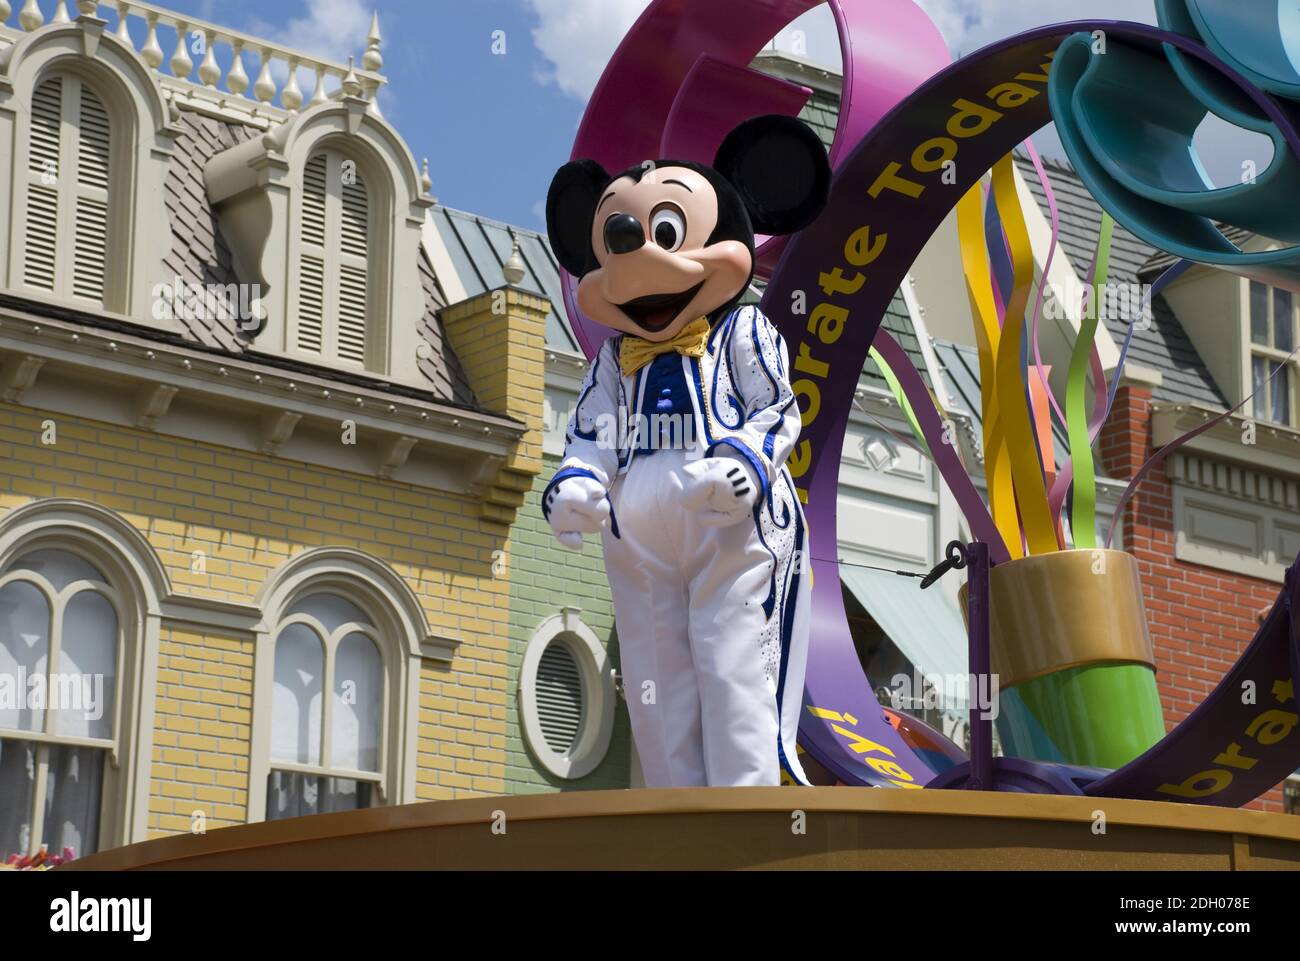 Micky Maus Parade in Orlando, Florida, Micky Maus, Disneyland, USA,m Stock Photo